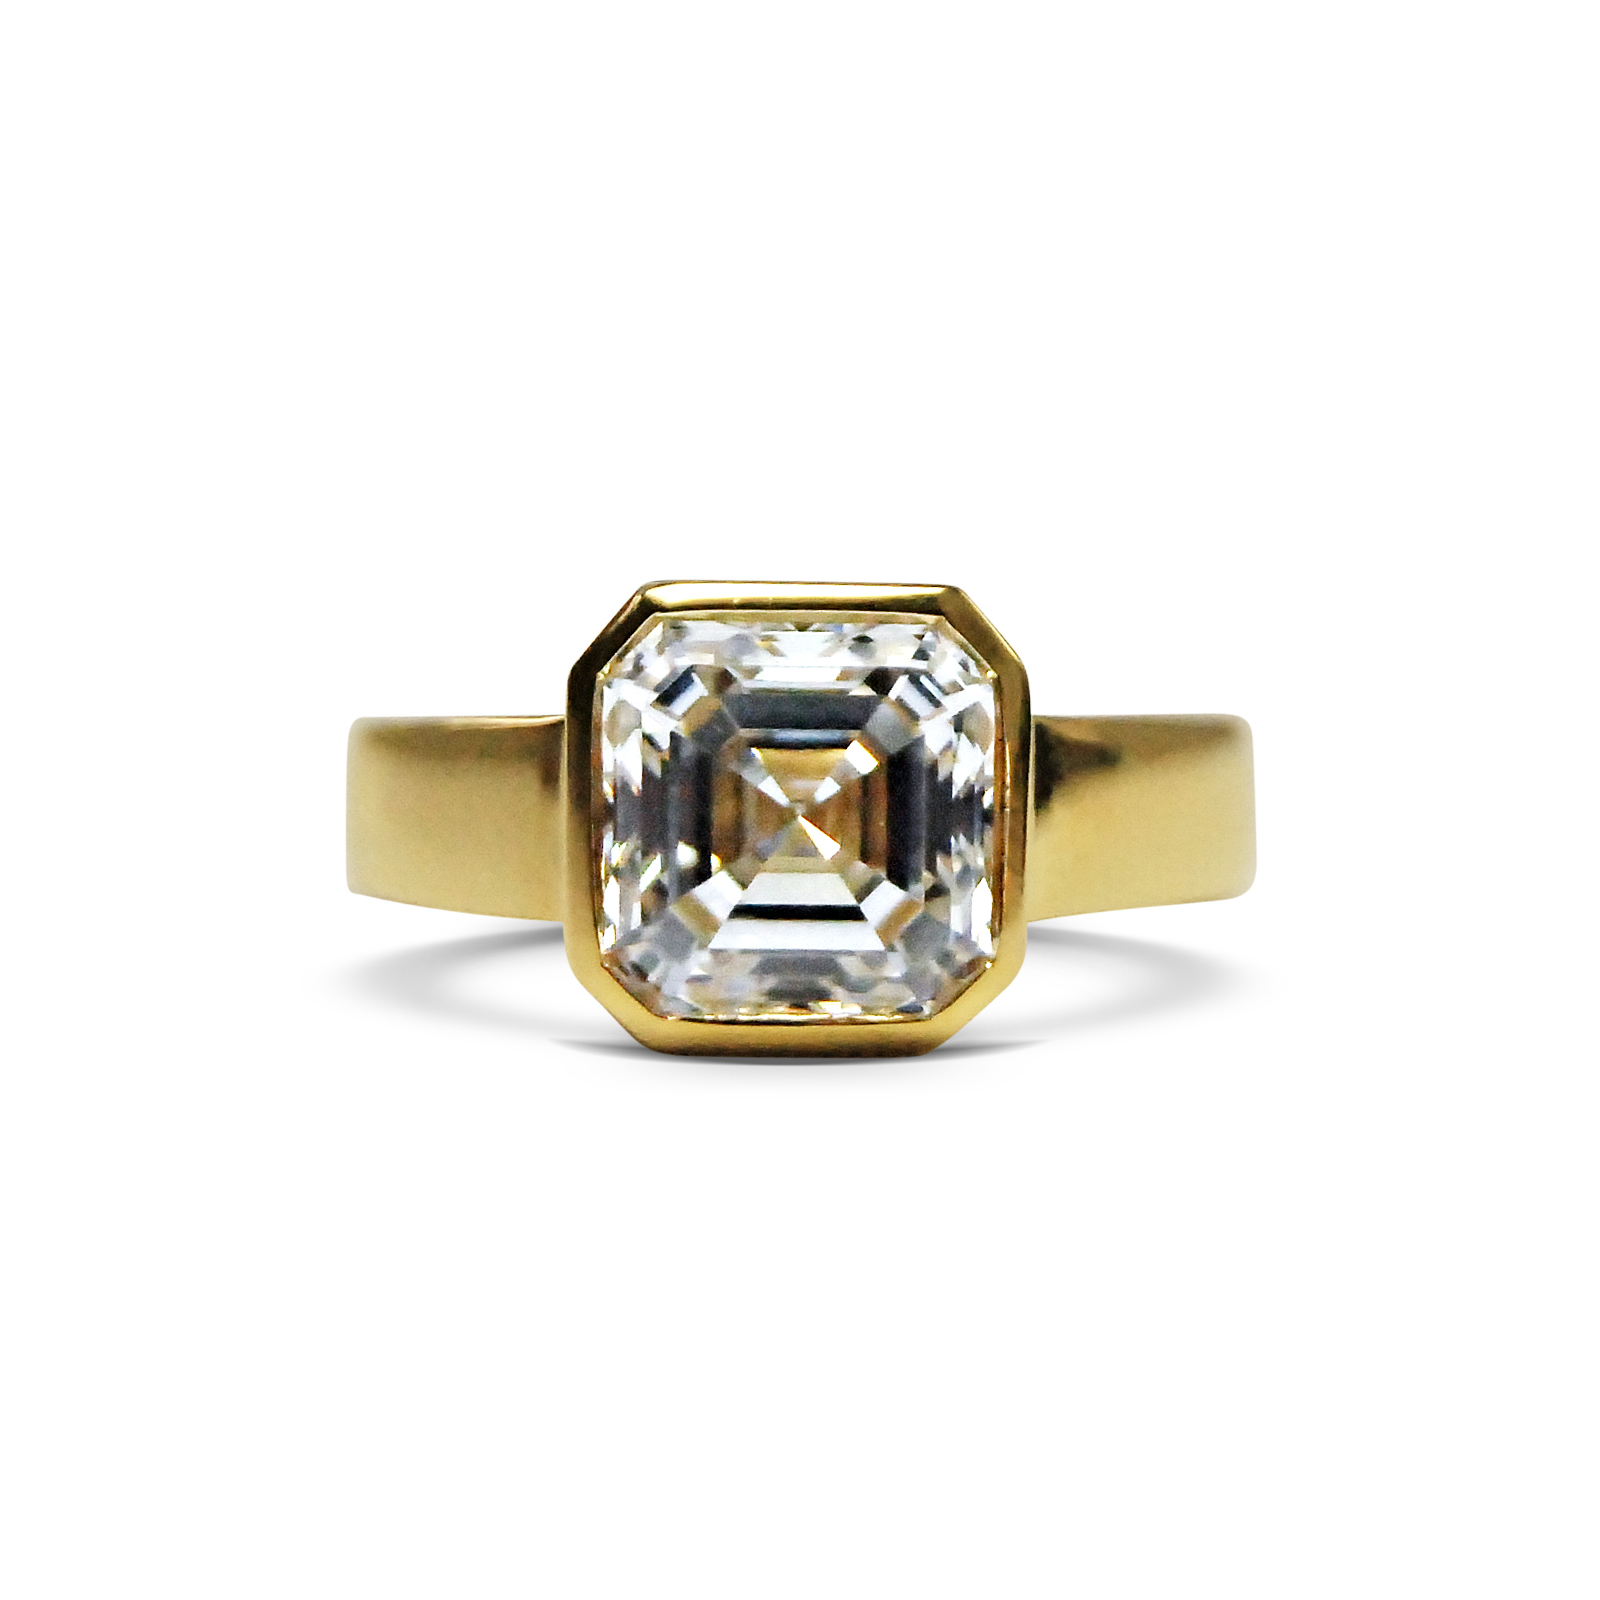 Asscher-cut-diamond-and-yellow-gold-ring.jpg